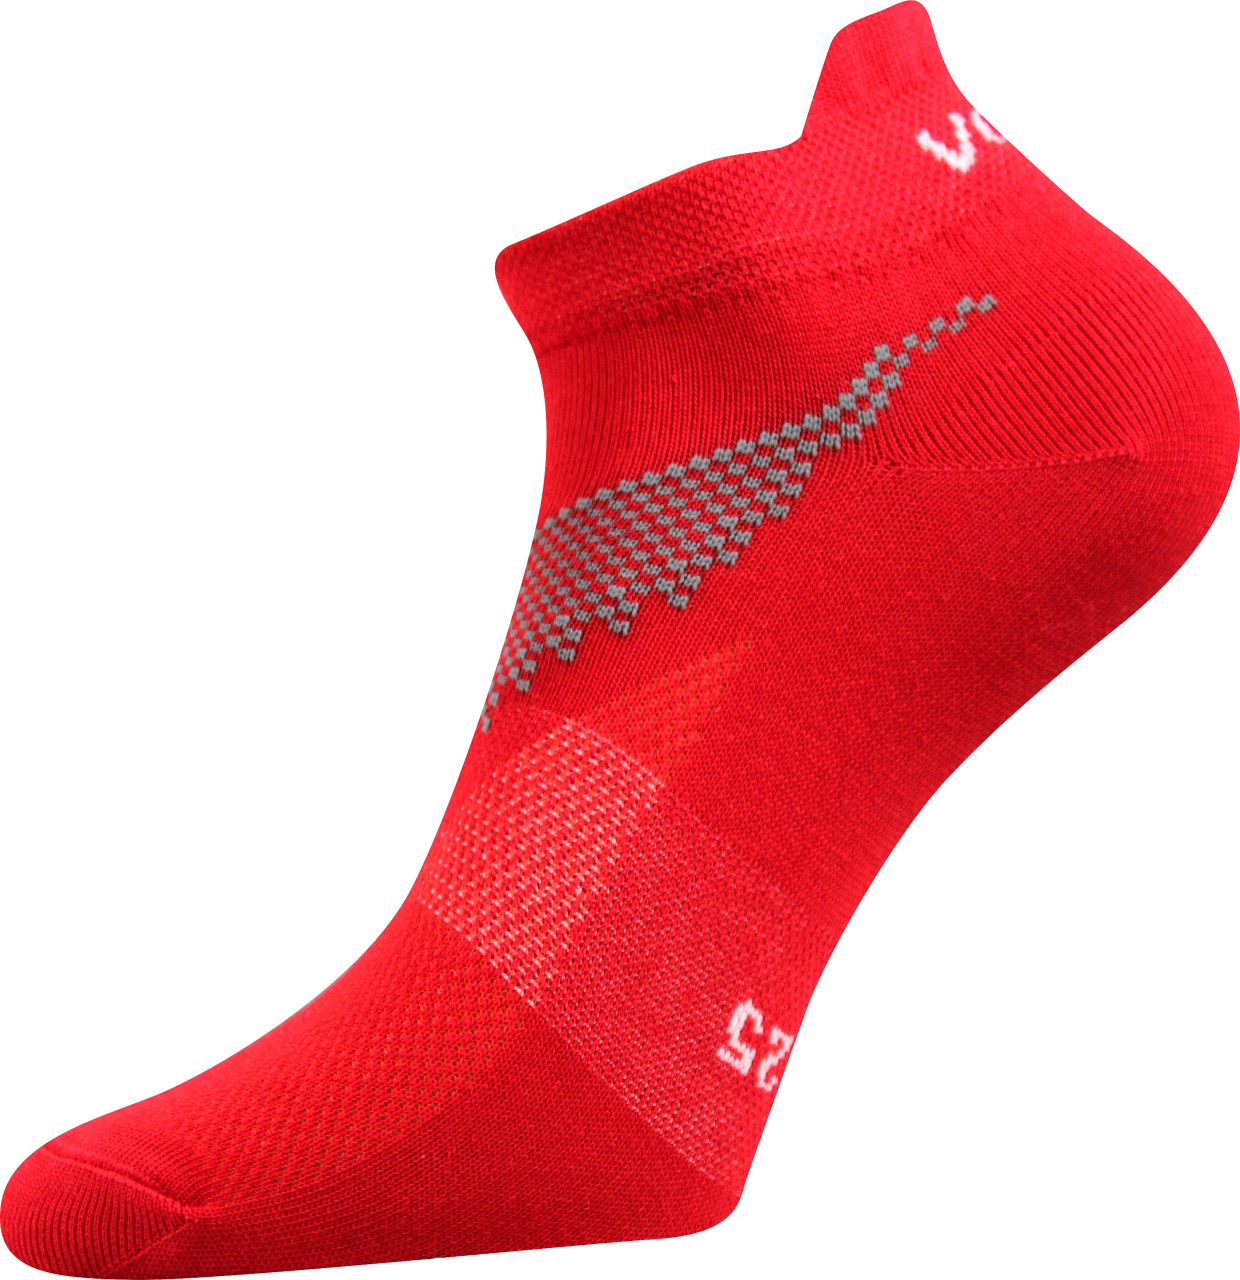 Ponožky sportovní nízké Voxx Iris - červené, 39-42